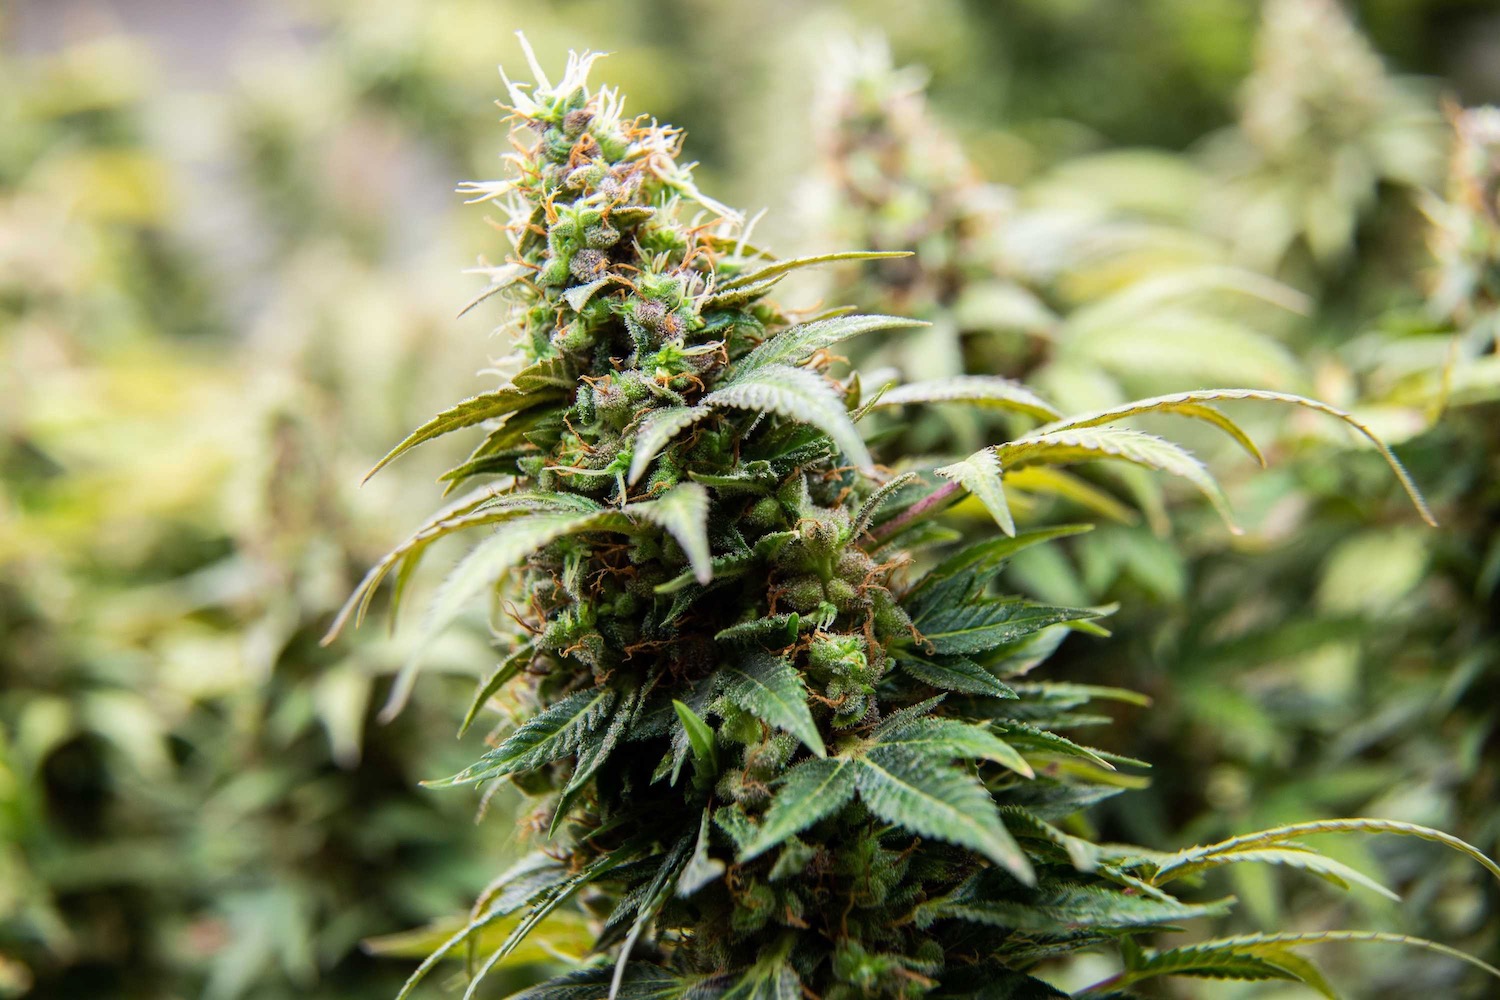 How to Grow Cannabis?